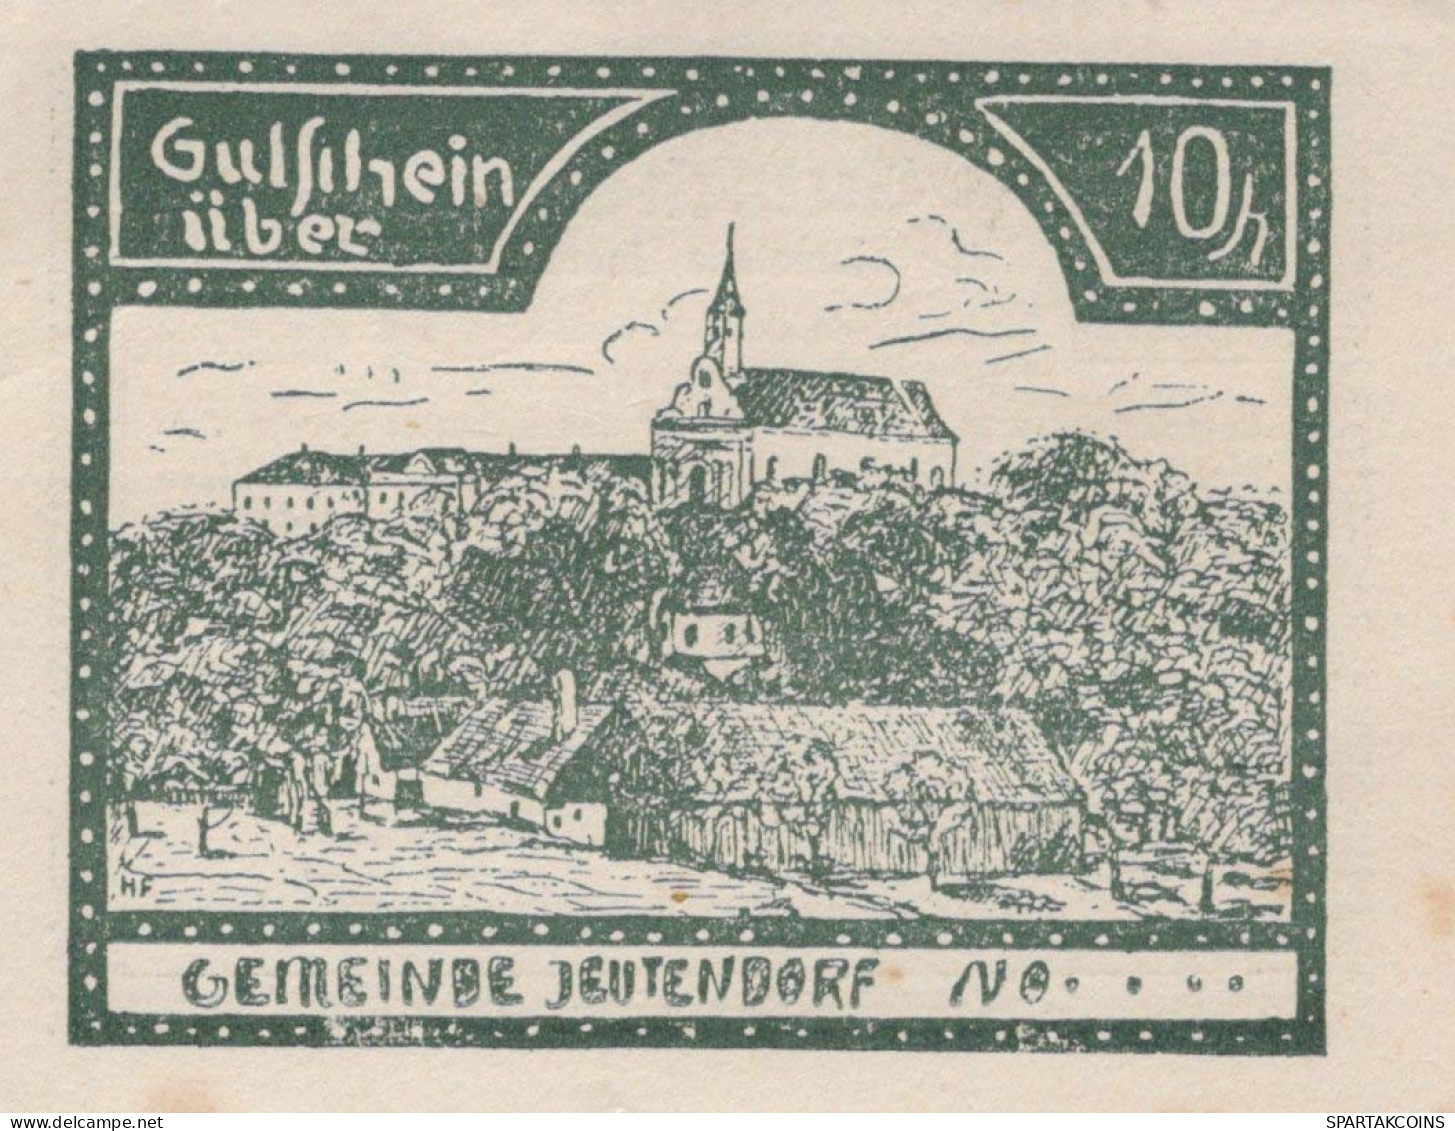 10 HELLER 1920 Stadt JEUTENDORF Niedrigeren Österreich Notgeld #PD634 - [11] Emissions Locales